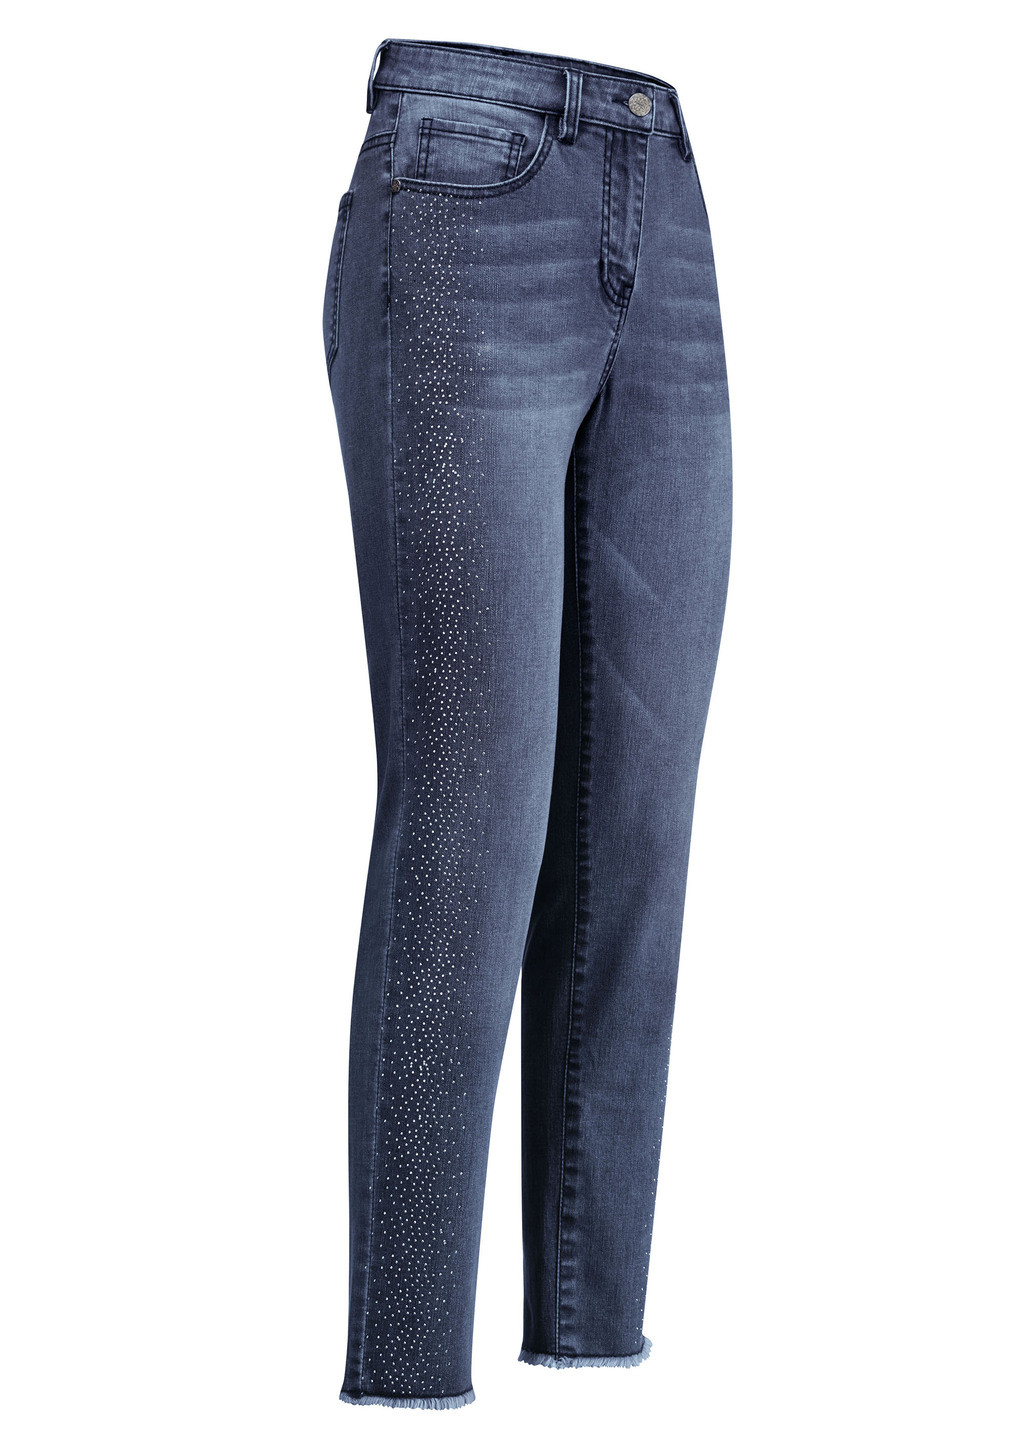 Edel-Jeans mit tollen Glitzersteinchen und Fransensaum, Dunkelblau, Größe 46 von BADER